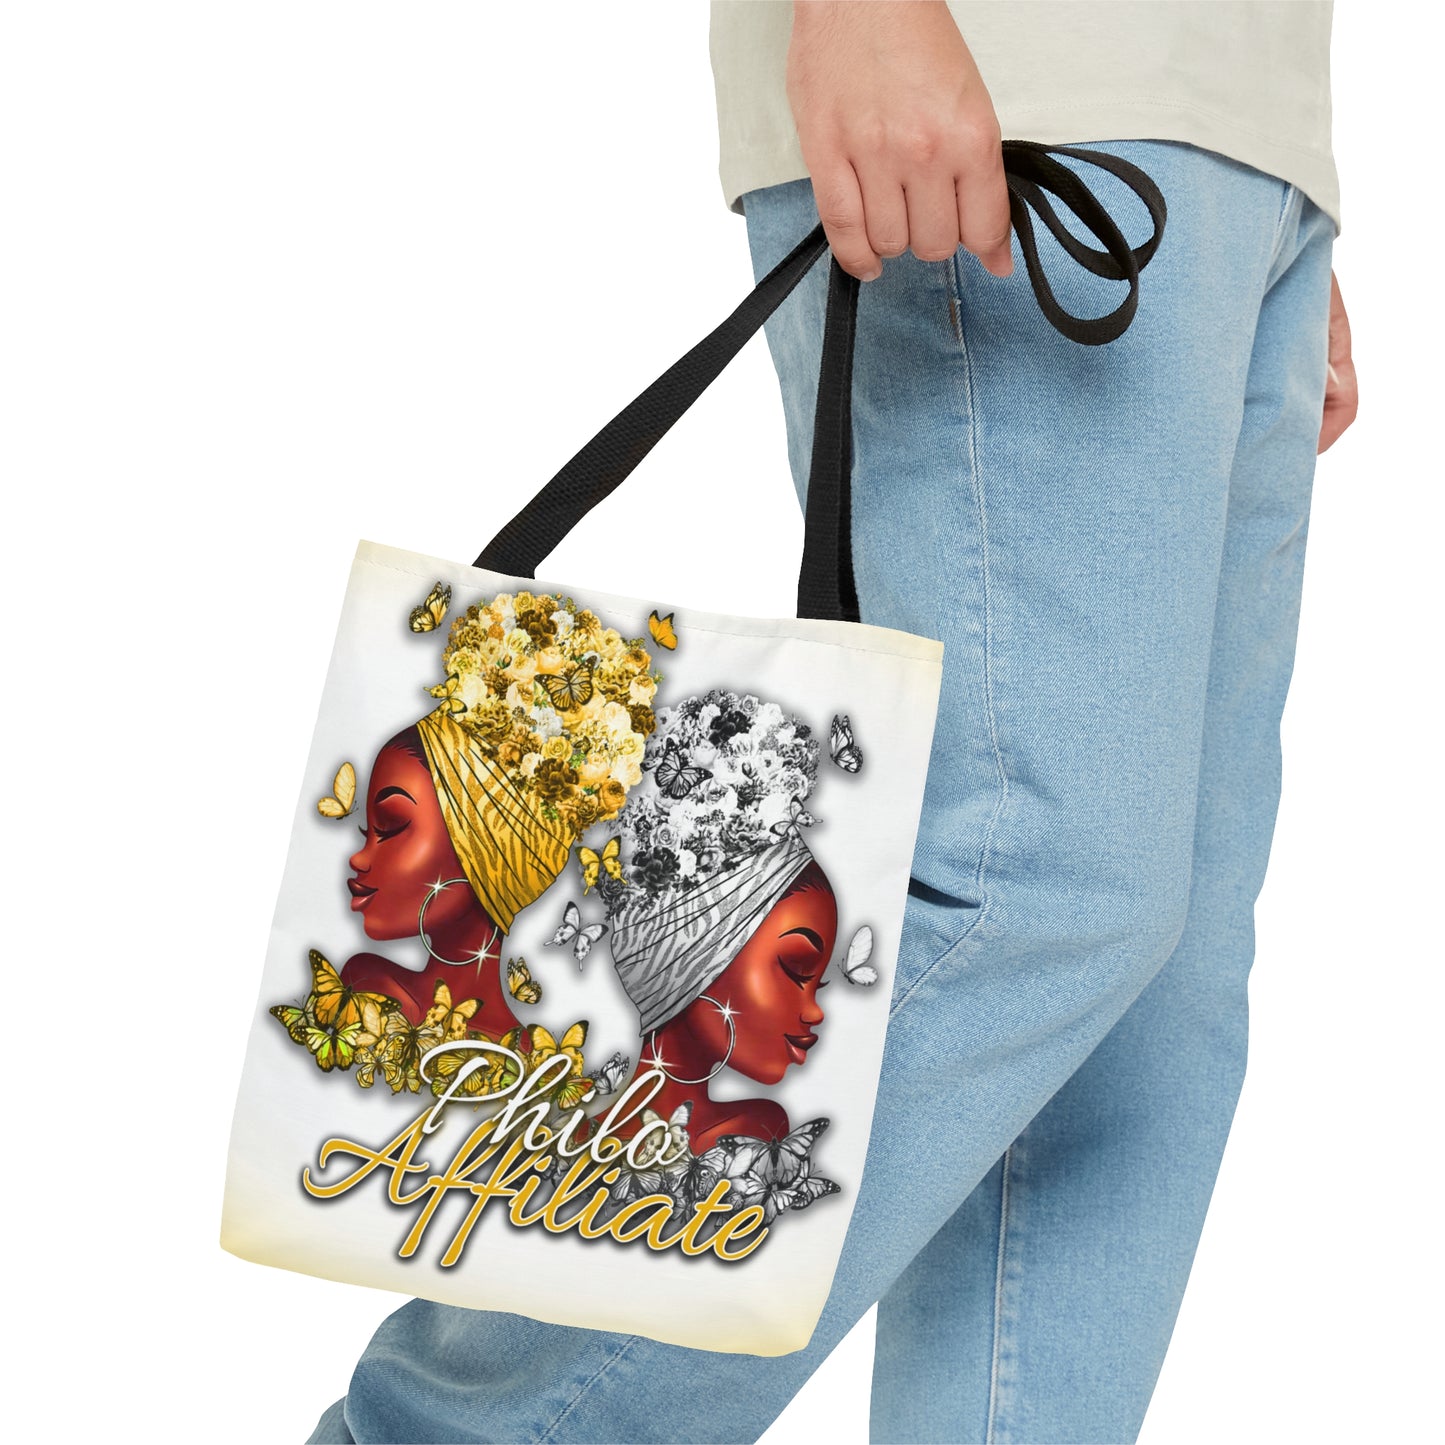 Philo Affiliates Wraps & Butterflies Tote Bag